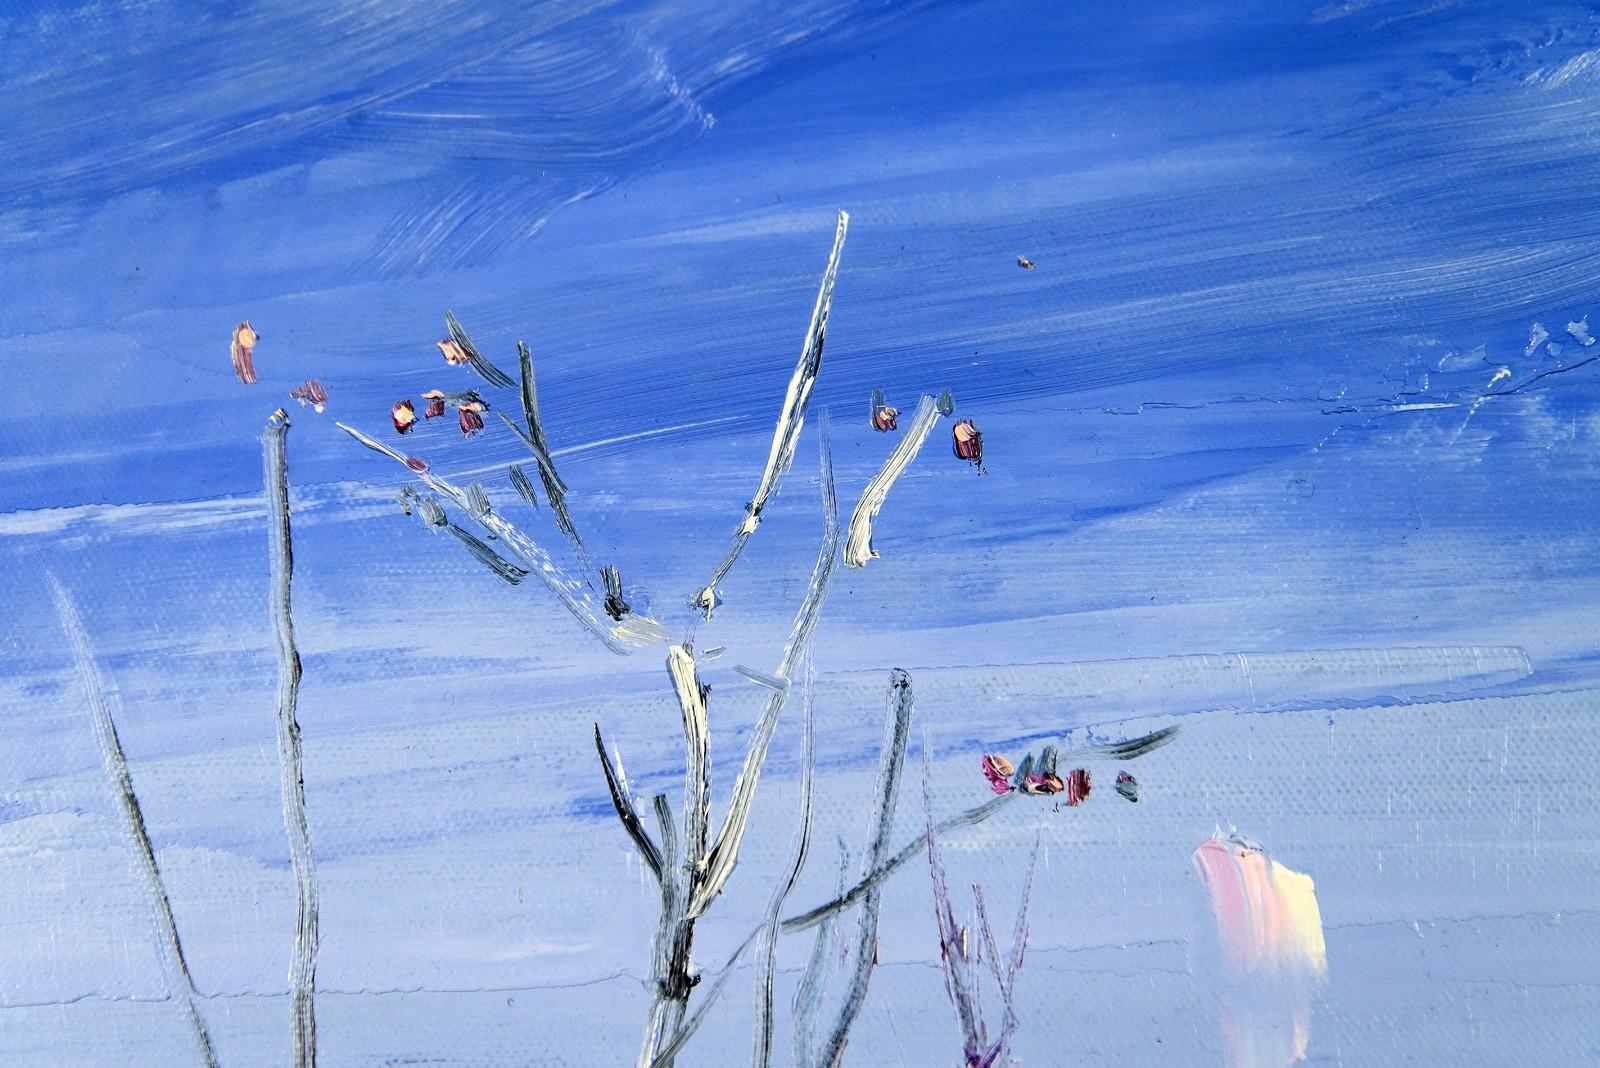 Kahle Bäume vor einem dramatisch blauen Himmel schmiegen sich in dieser verträumten Landschaft von Julie Himel an die Küstenlinie. Himels Werke sind in einer Pastellpalette aus Blau, Mauve, Weiß und Hellgelb gehalten, die von Schwarz unterbrochen